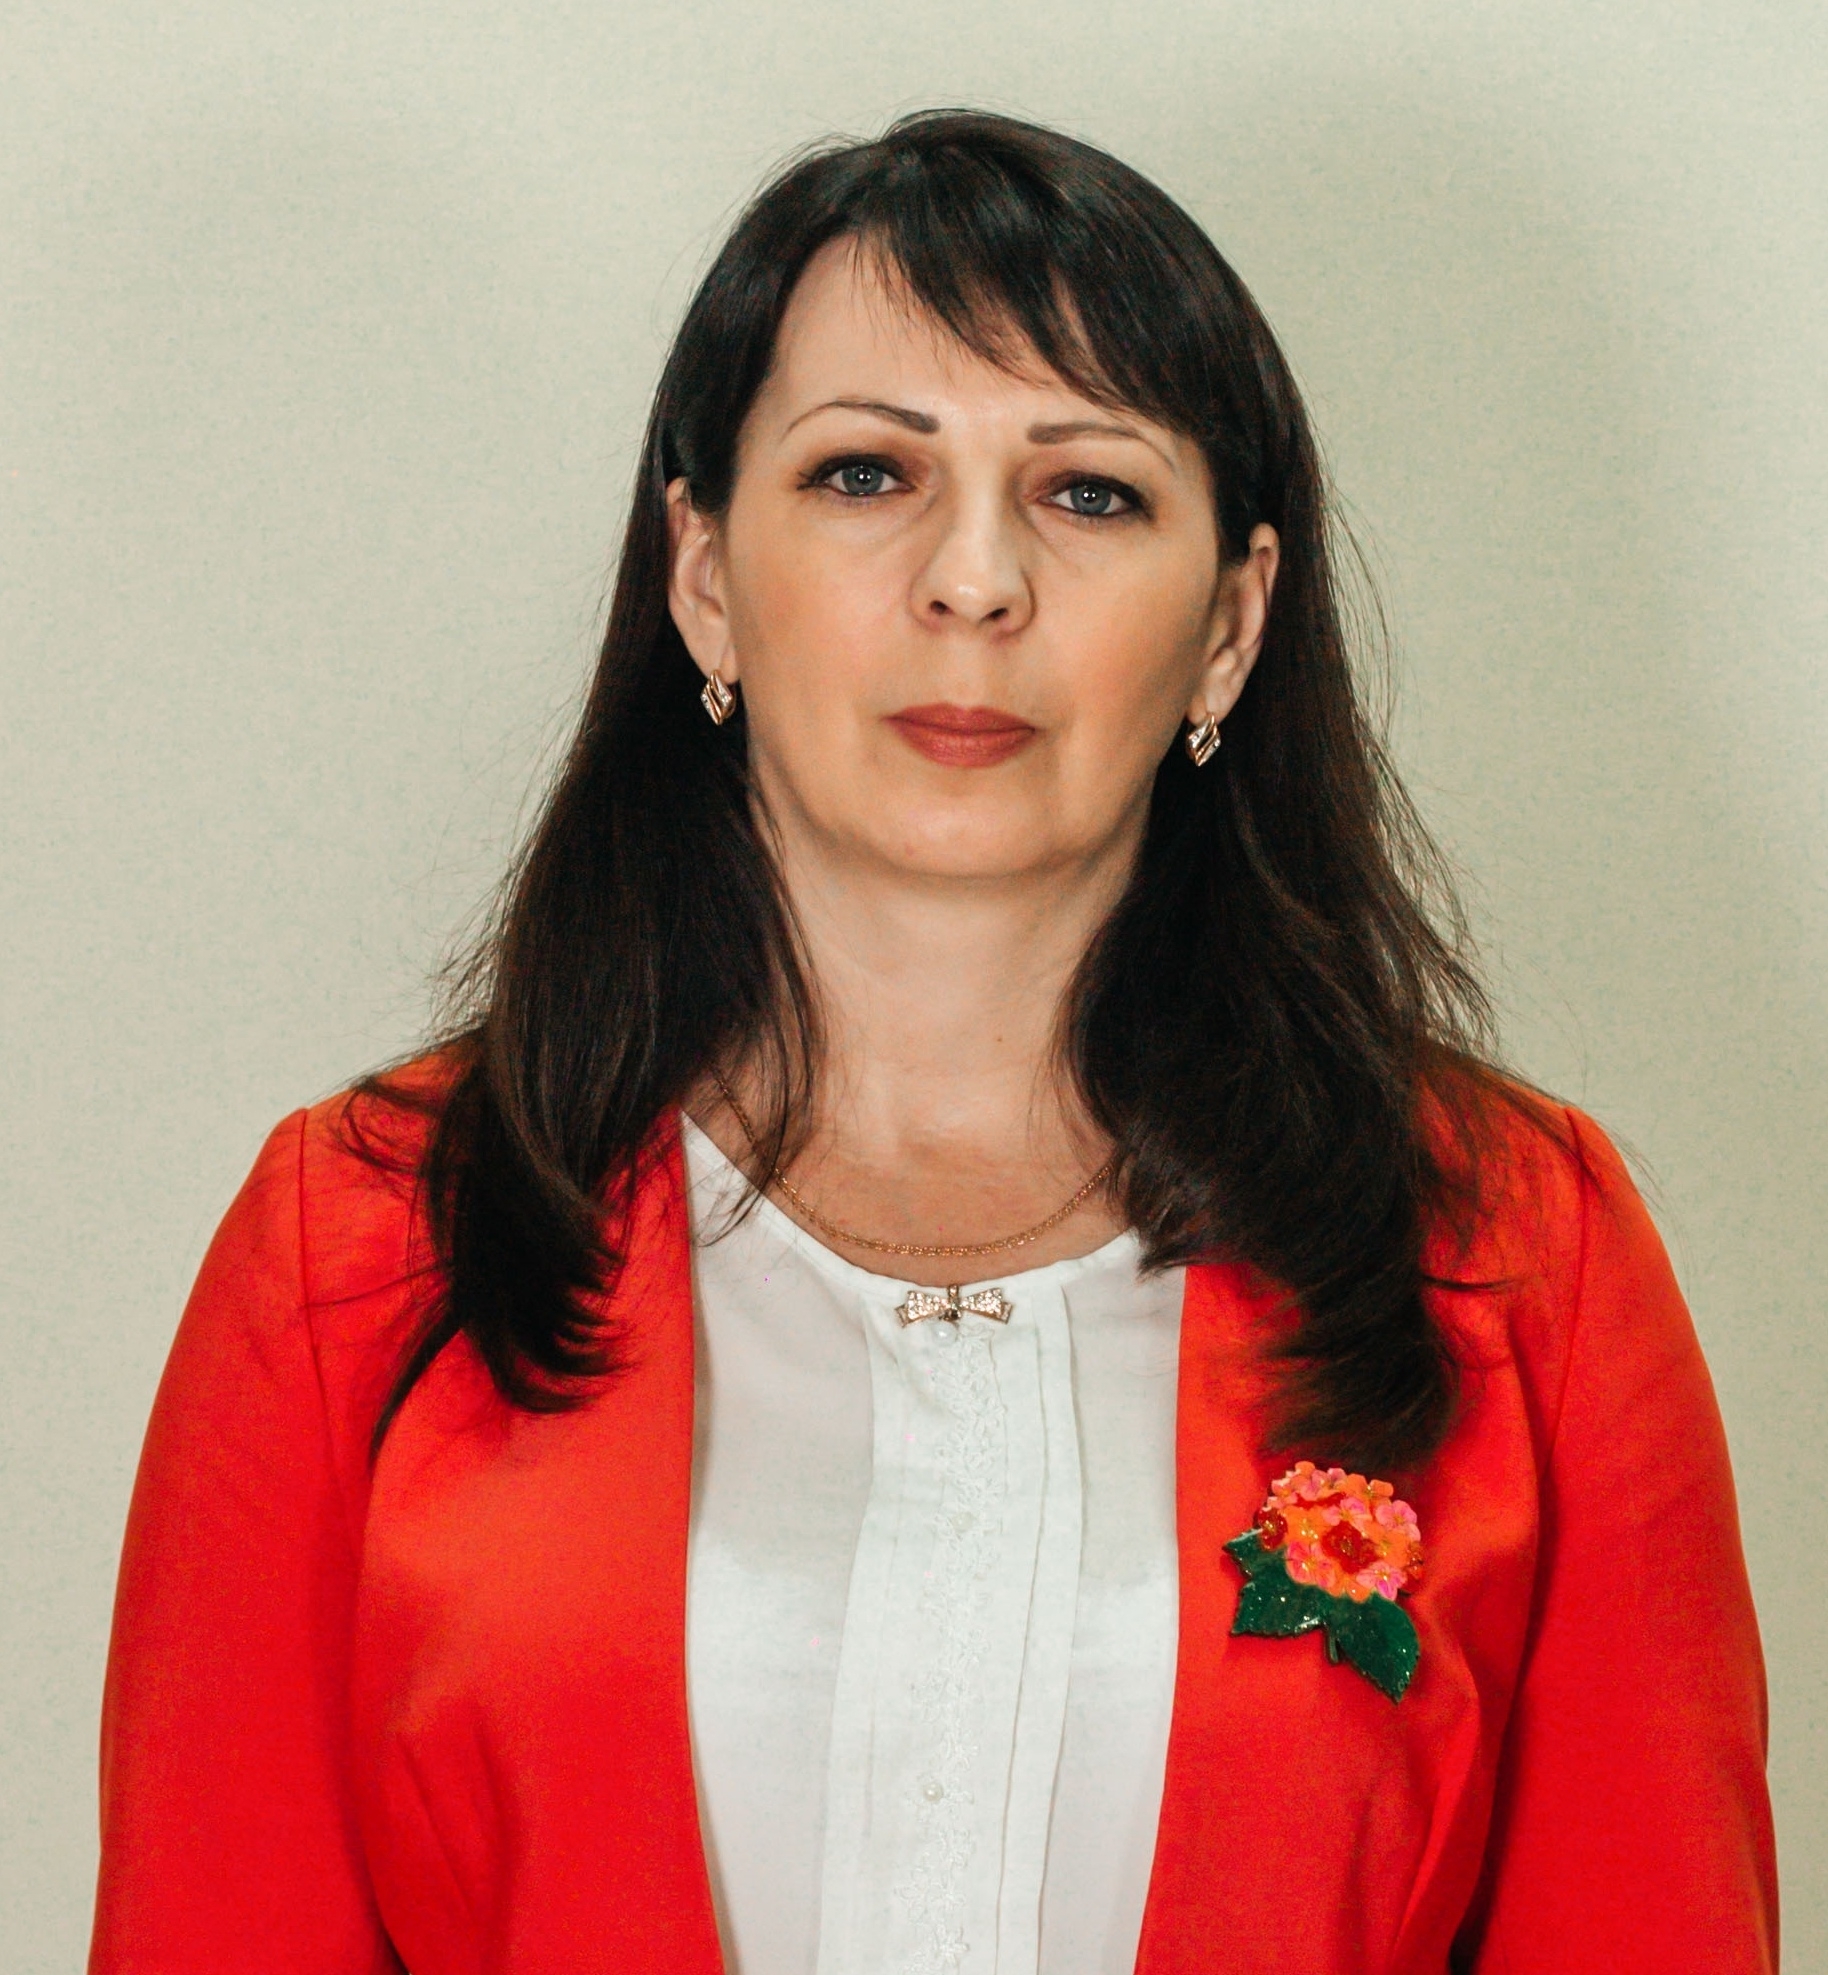 Горкунова Наталья Александровна, Председатель Общественного совета при администрации р.п. Кольцово